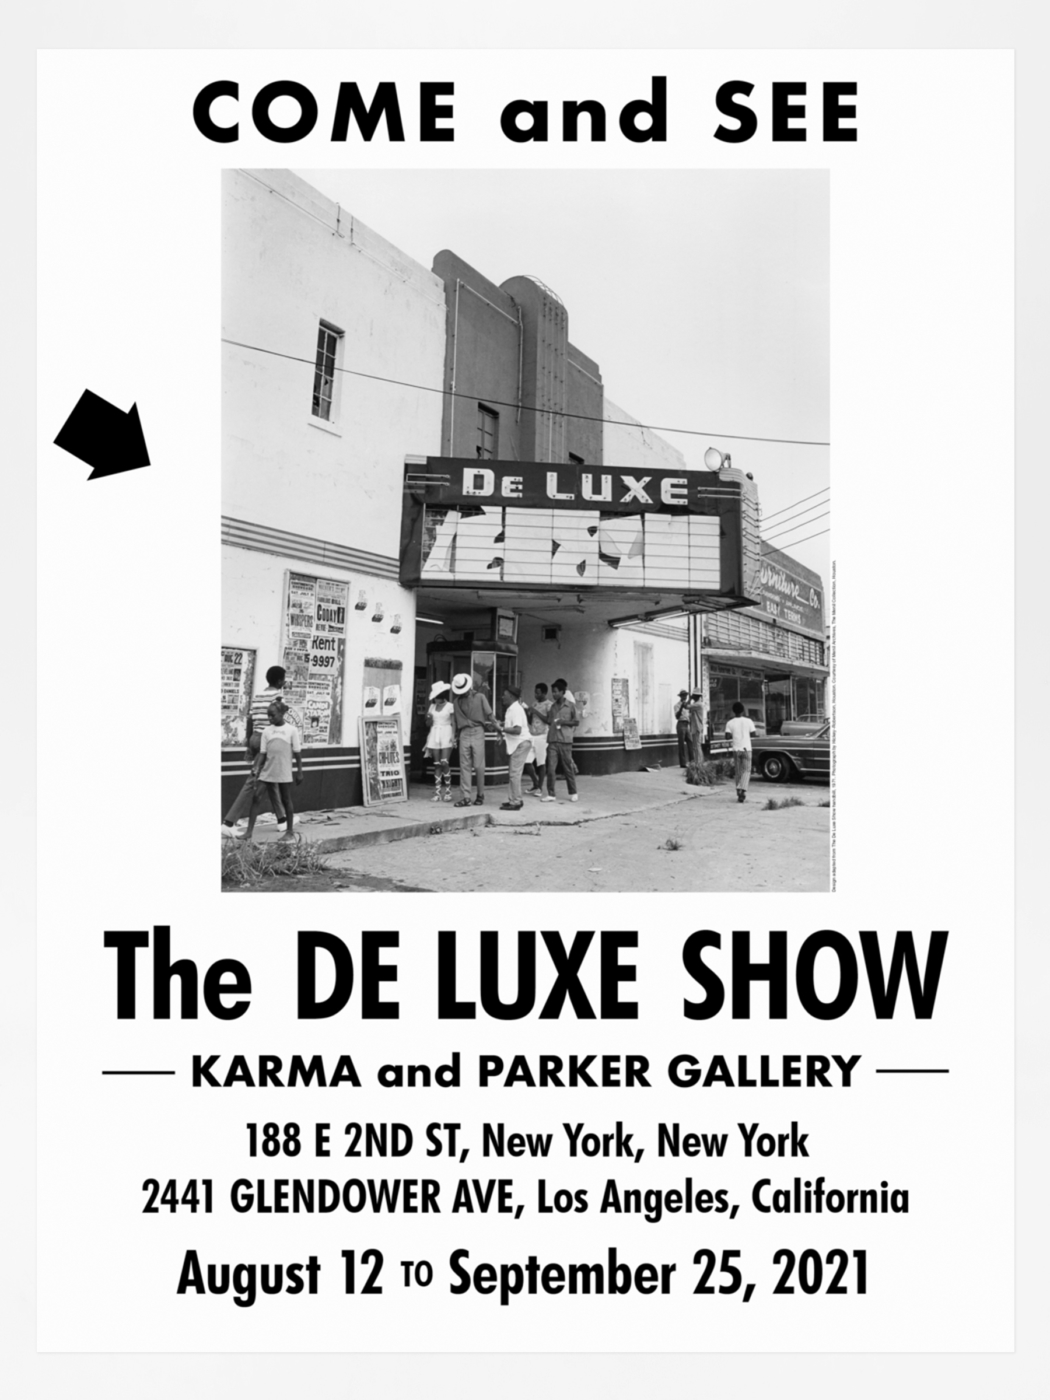 The De Luxe Show Poster